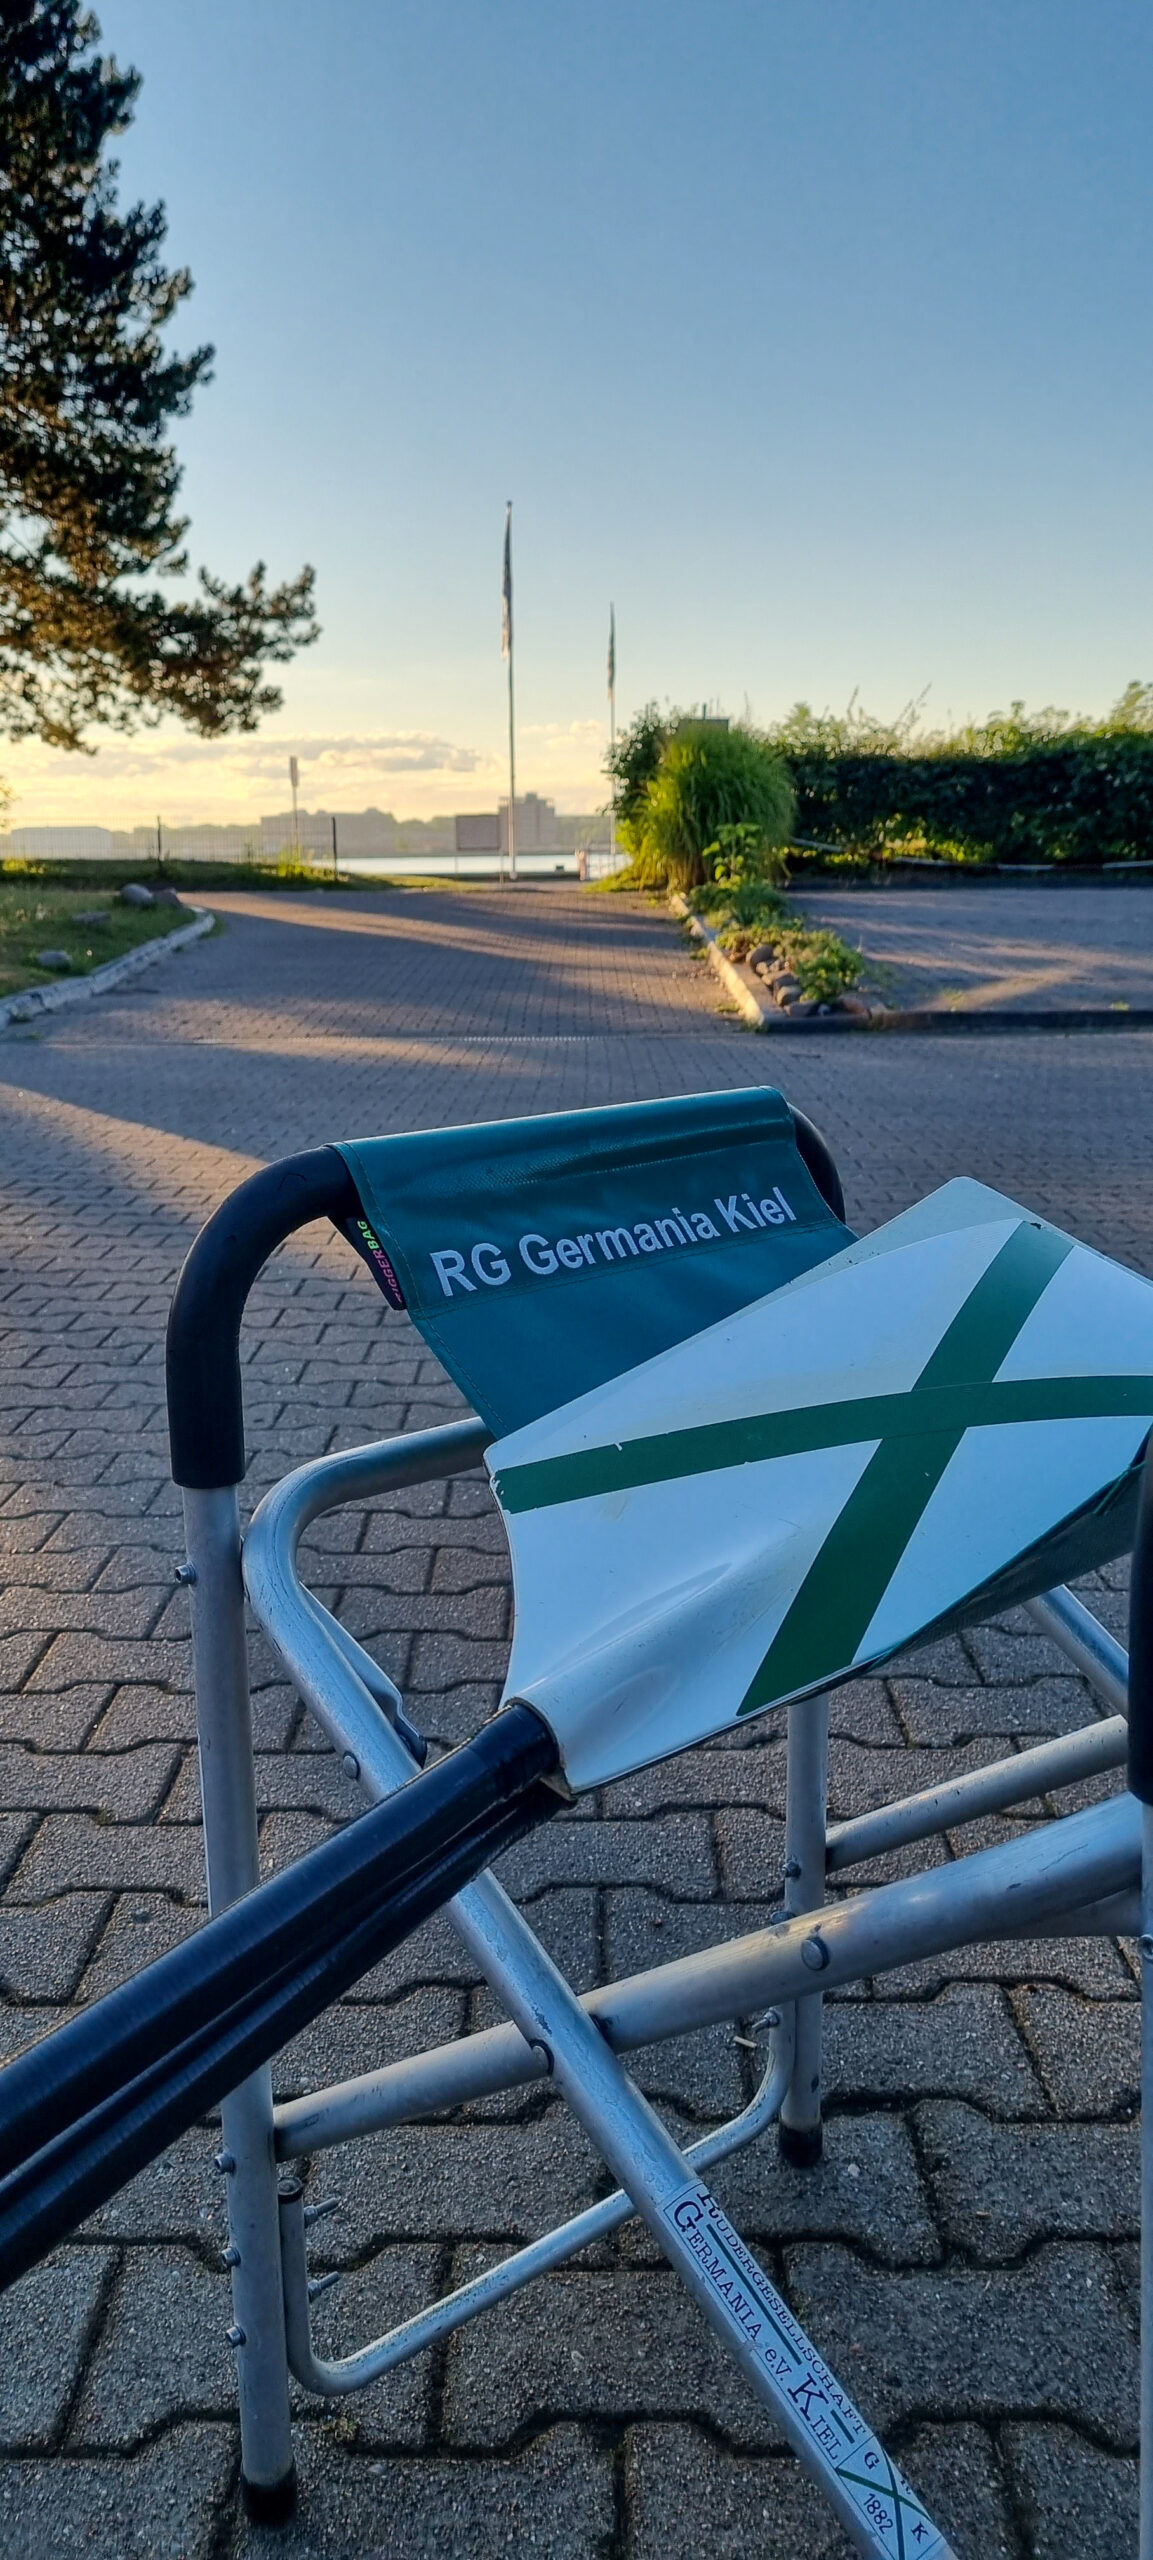 Ruderskull liegt auf einem Klappbock mit dem Schriftzug RG Germania Kiel - im Hintergrund schimmert die Kieler Förde